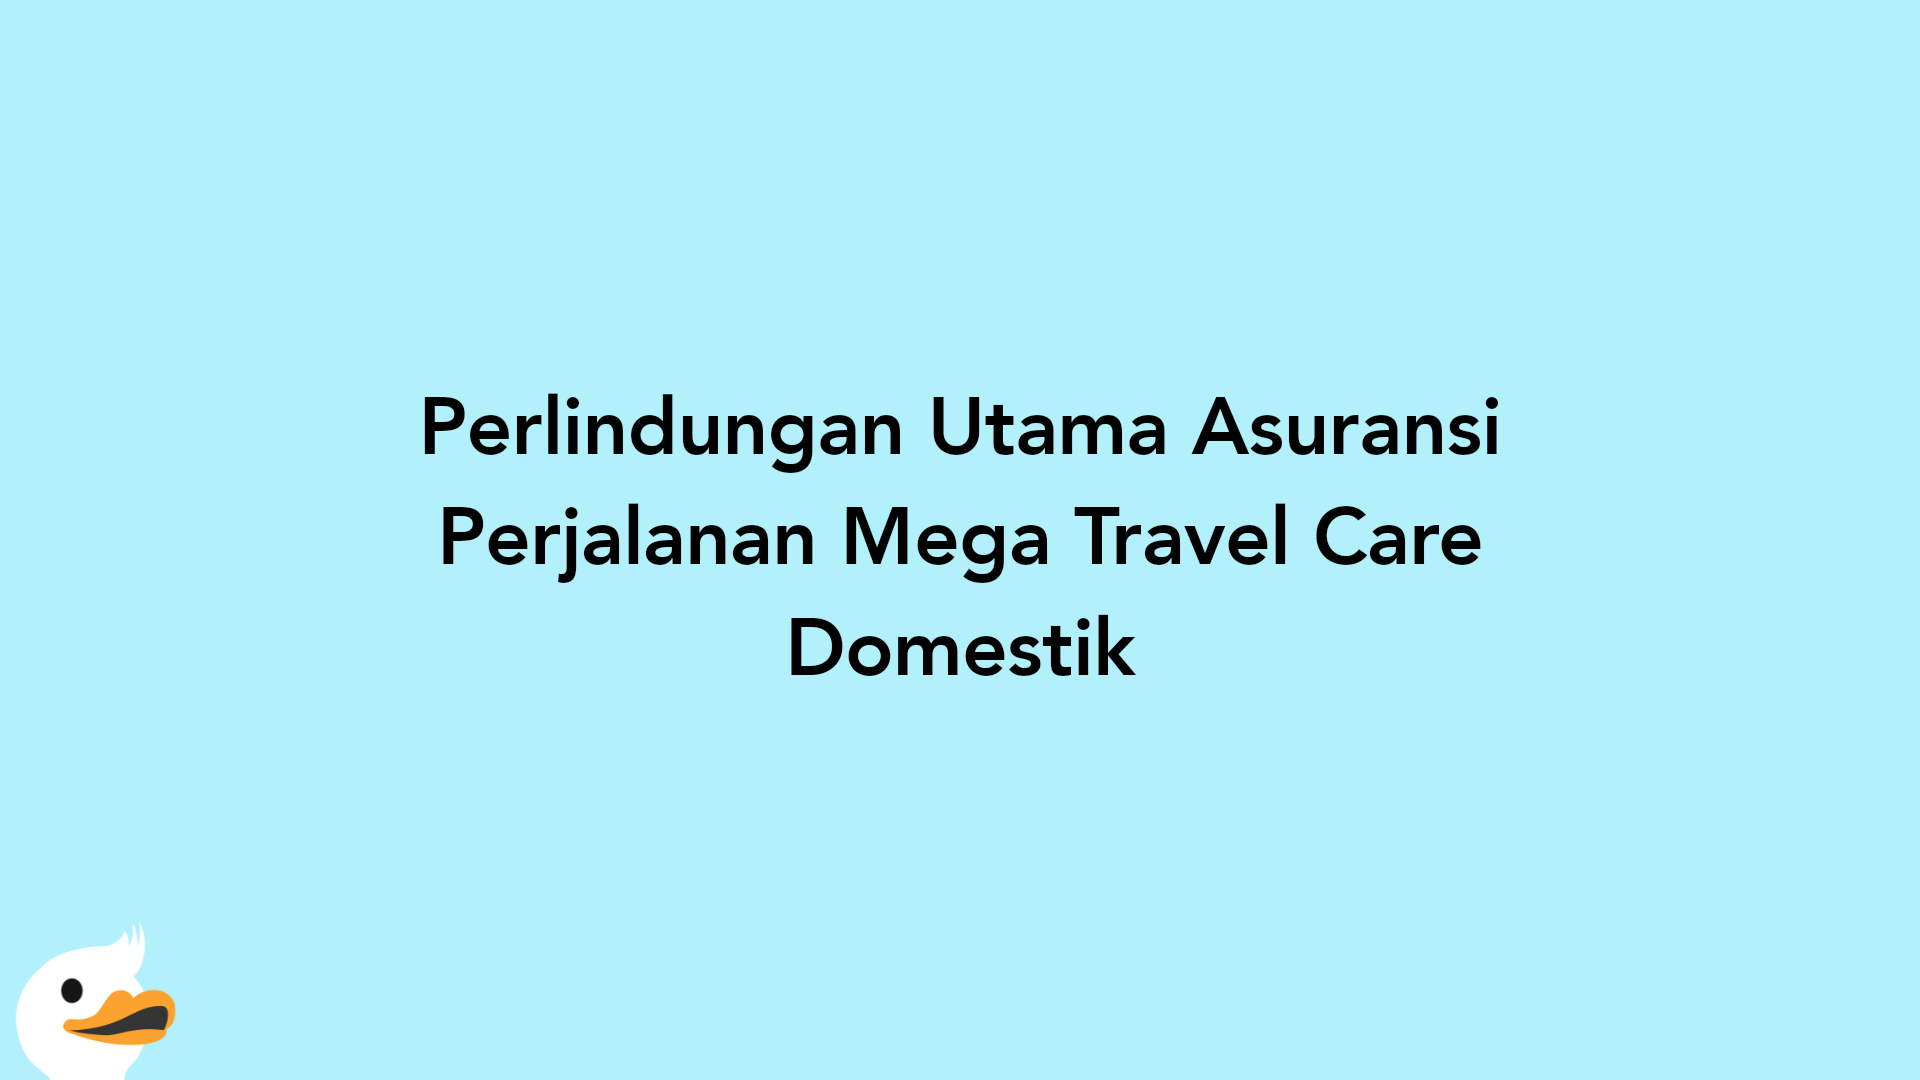 Perlindungan Utama Asuransi Perjalanan Mega Travel Care Domestik